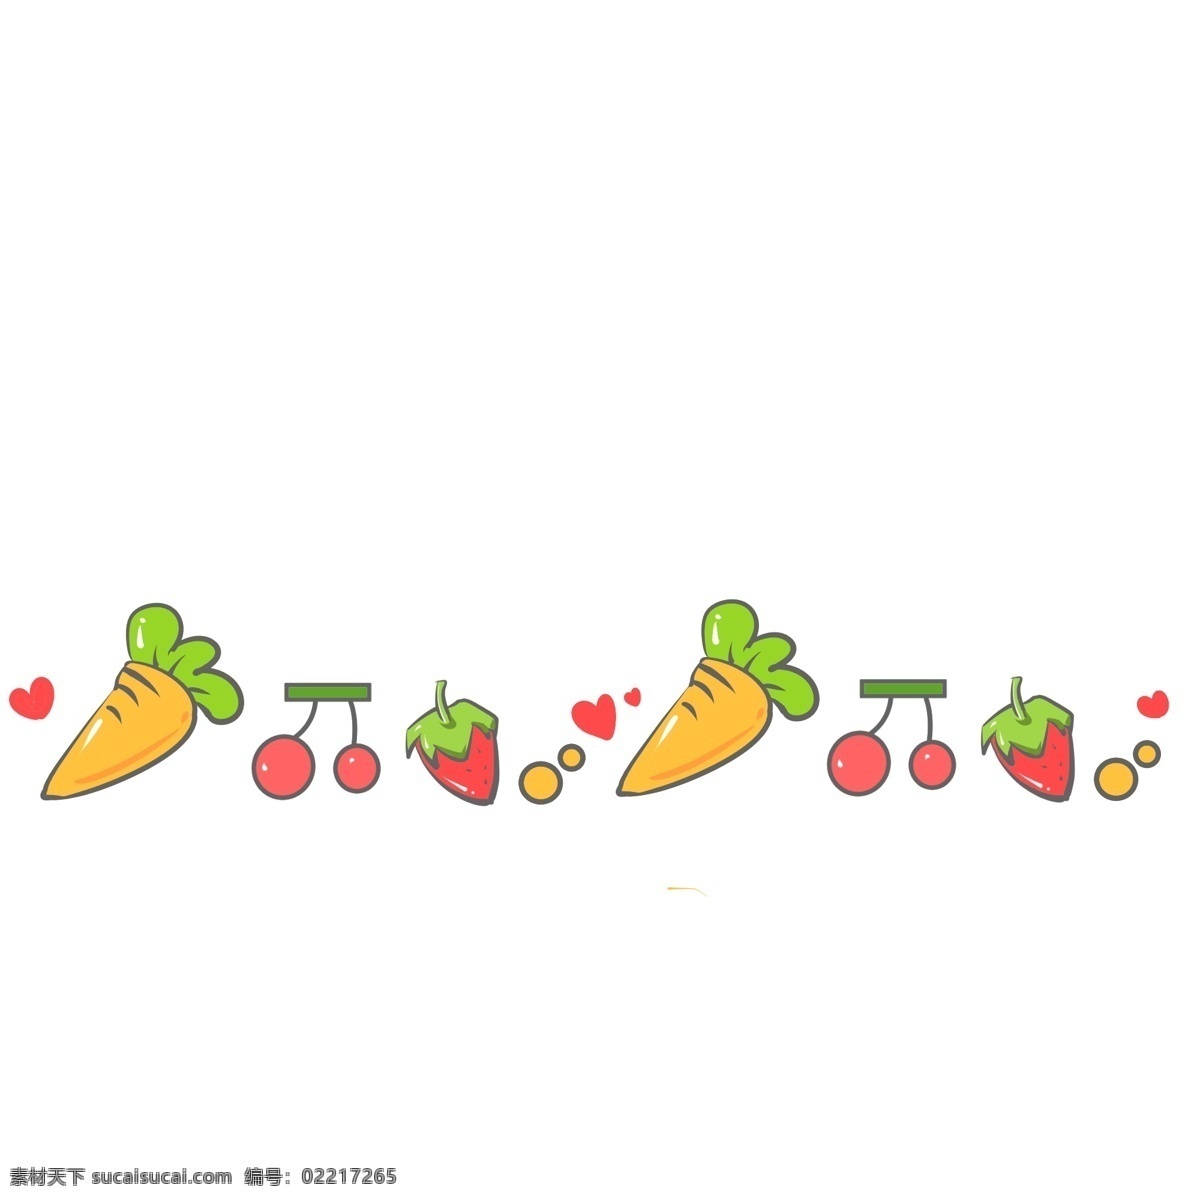 黄色 胡萝卜 分割线 黄色的分割线 胡萝卜分割线 樱桃分割线 草莓分割线 分割线装饰 食物分割线